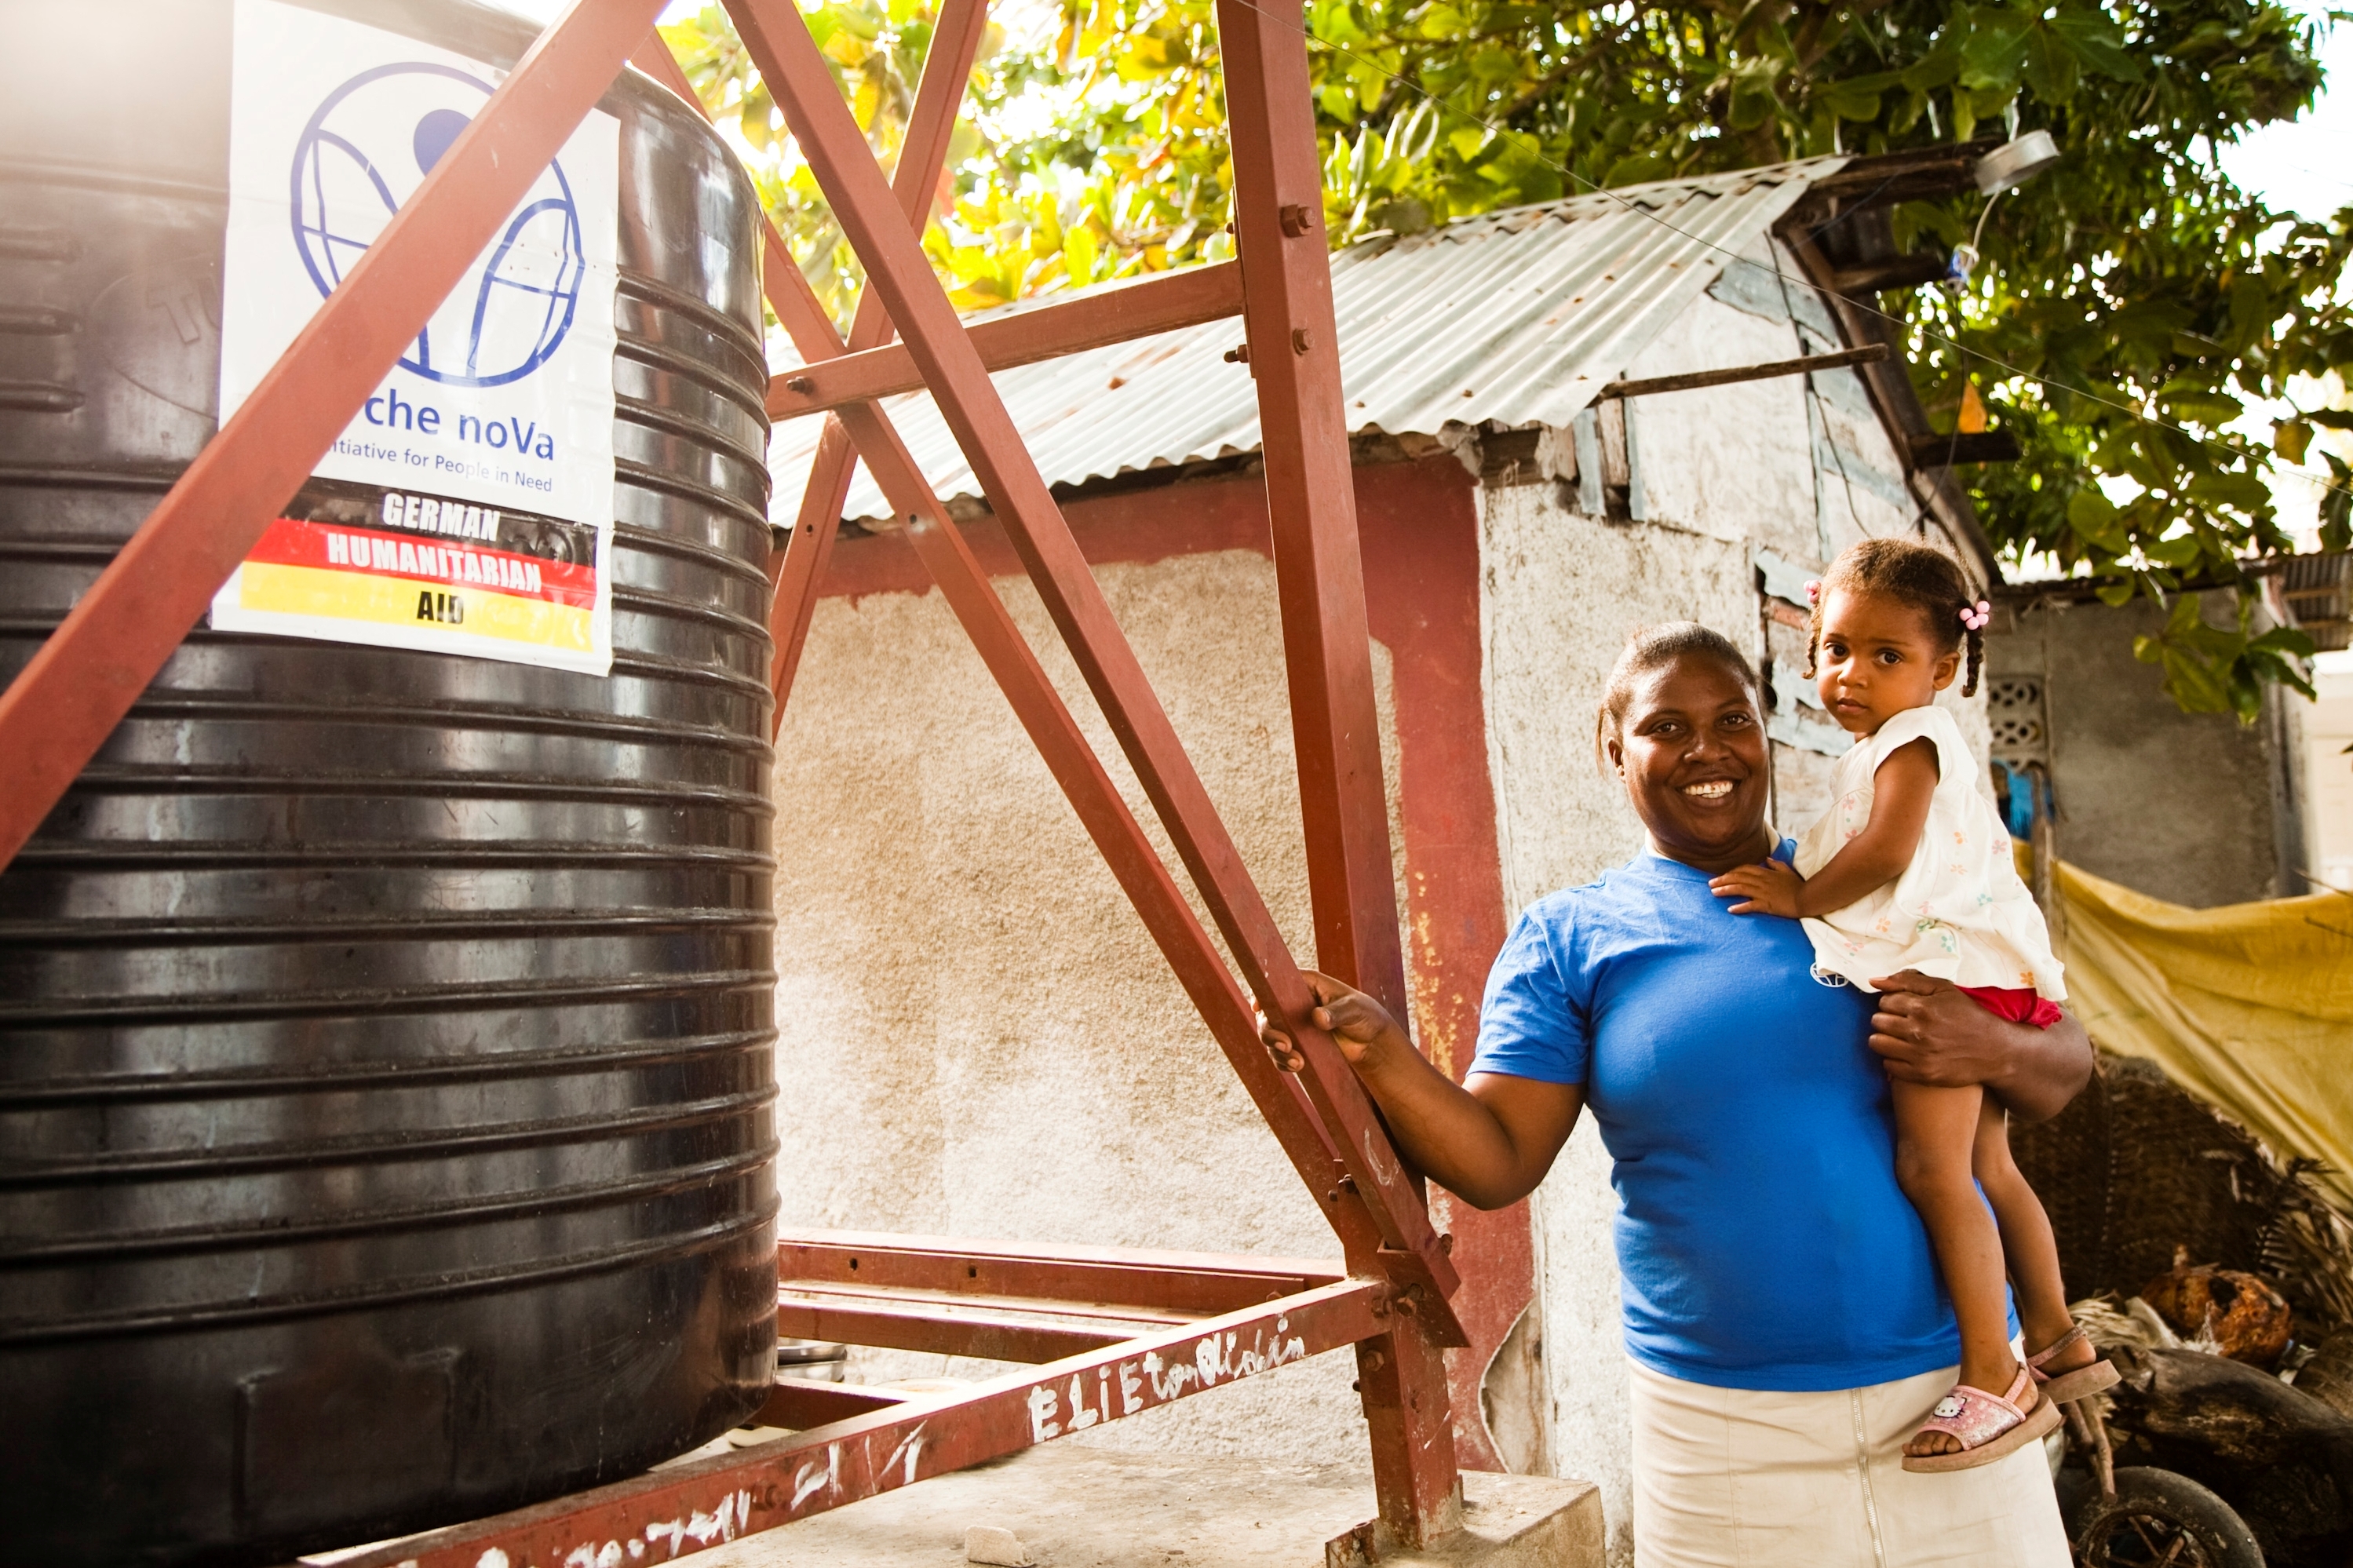 Frau mit Mädchen auf dem Arm lehnt an Stahlkonstruktion, daneben ein Wassertank mit arche noVa Logo